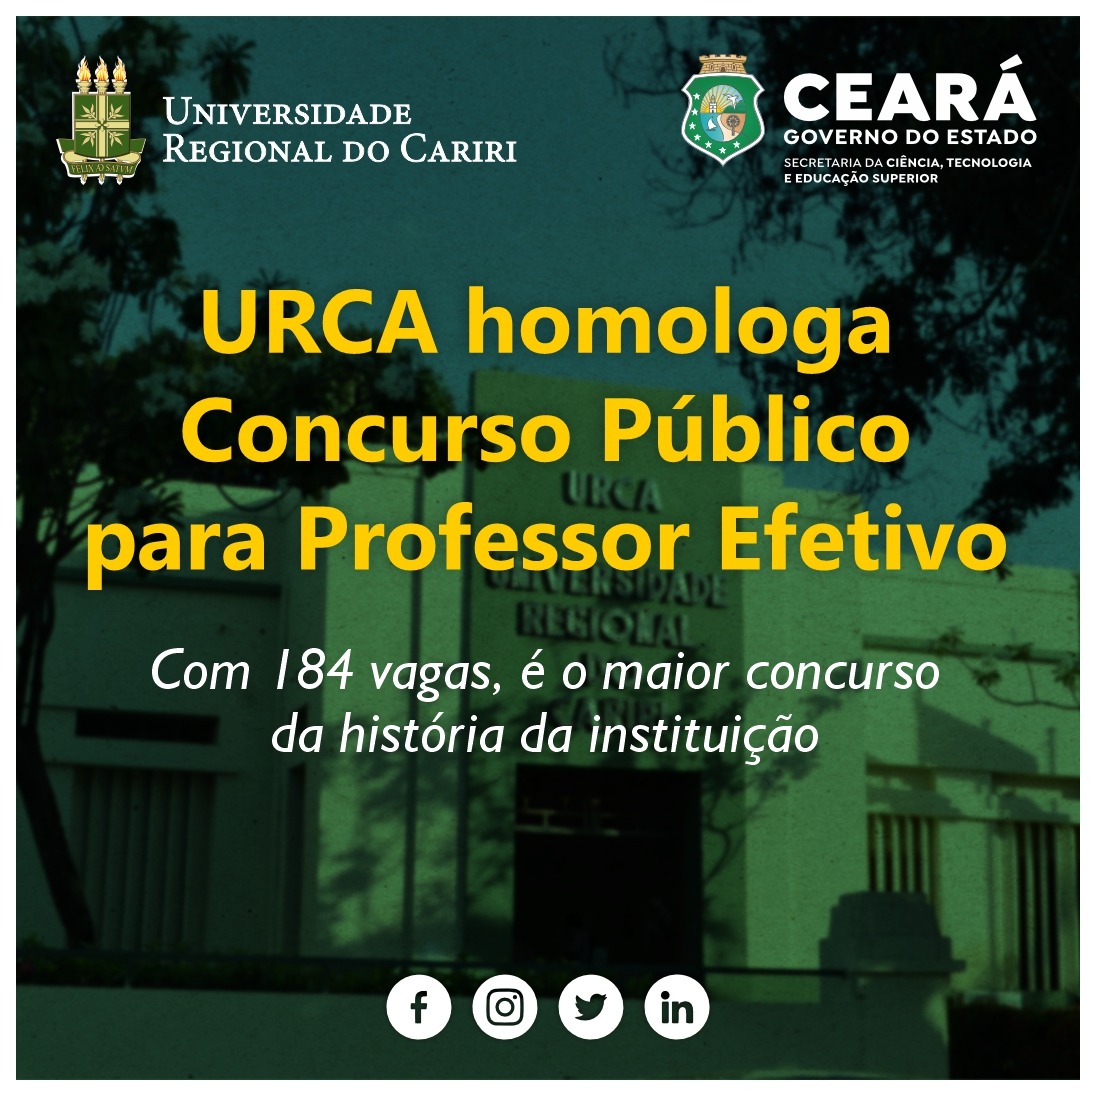 URCA homologa concurso público para professor efetivo